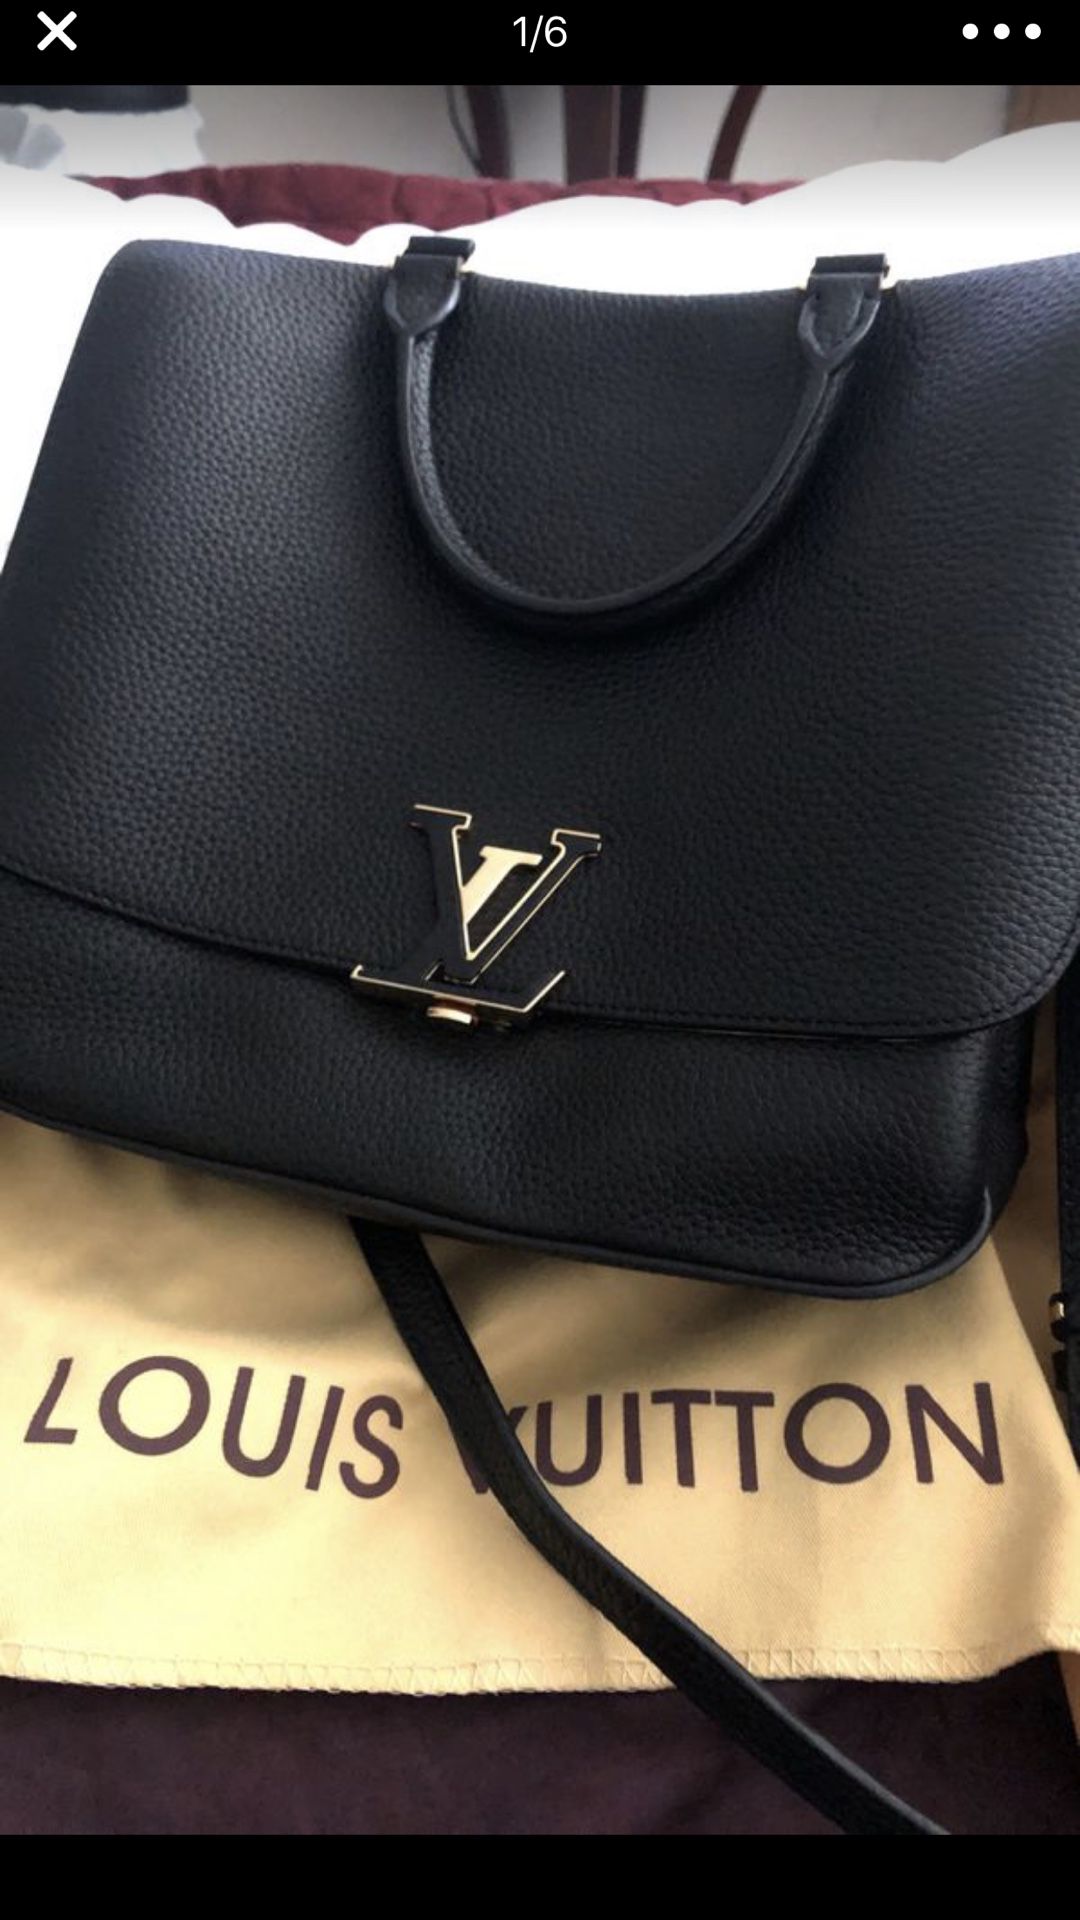 Nice leather purse